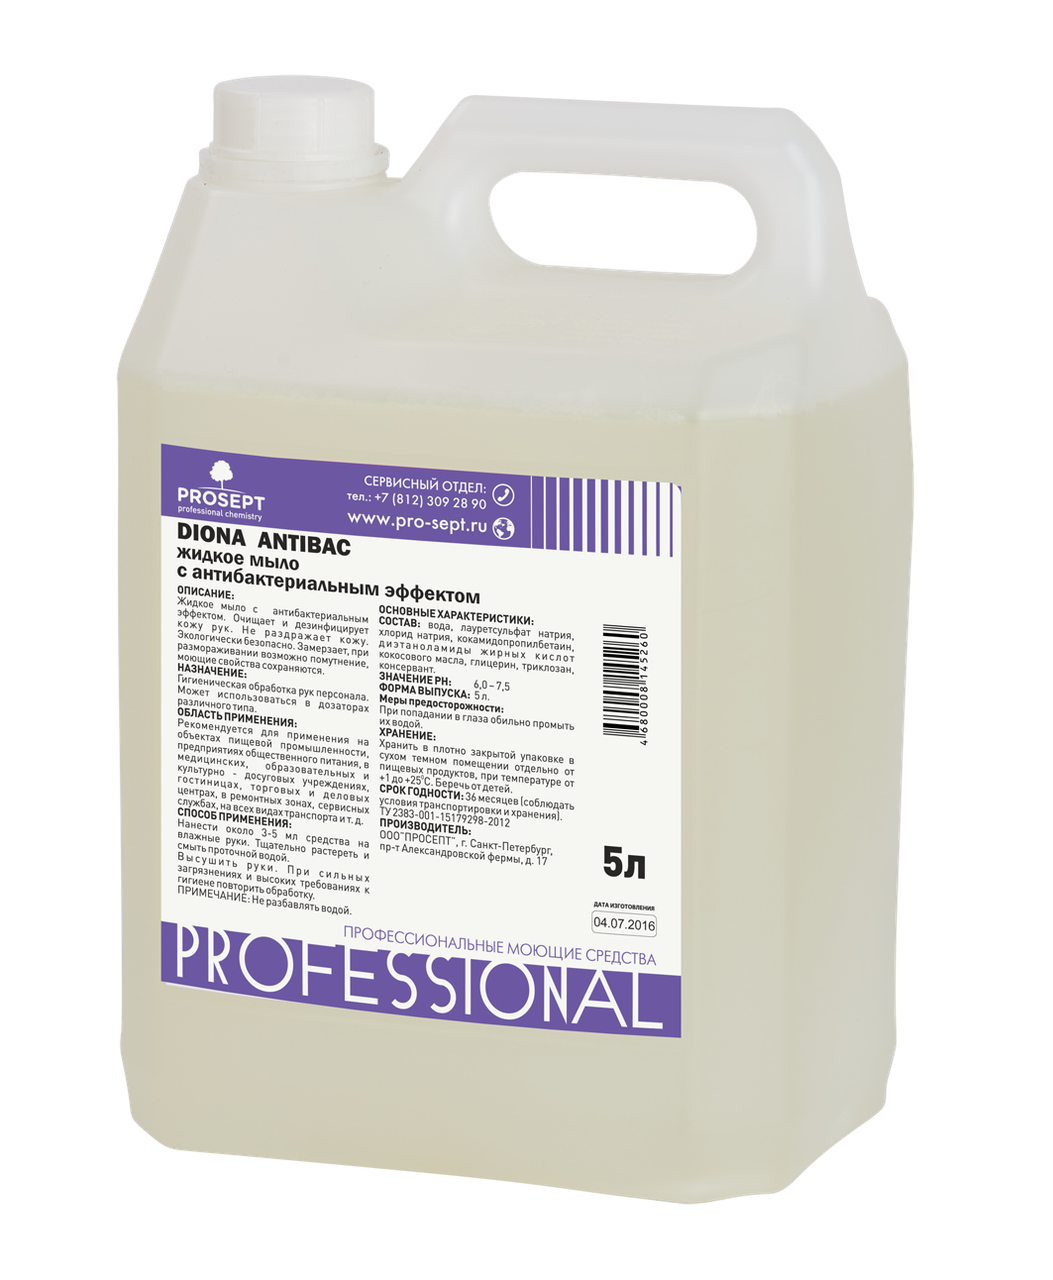 Антибактериальное гелеобразное мыло 251-5 Diona Antibac  5 литров (PROSEPT)